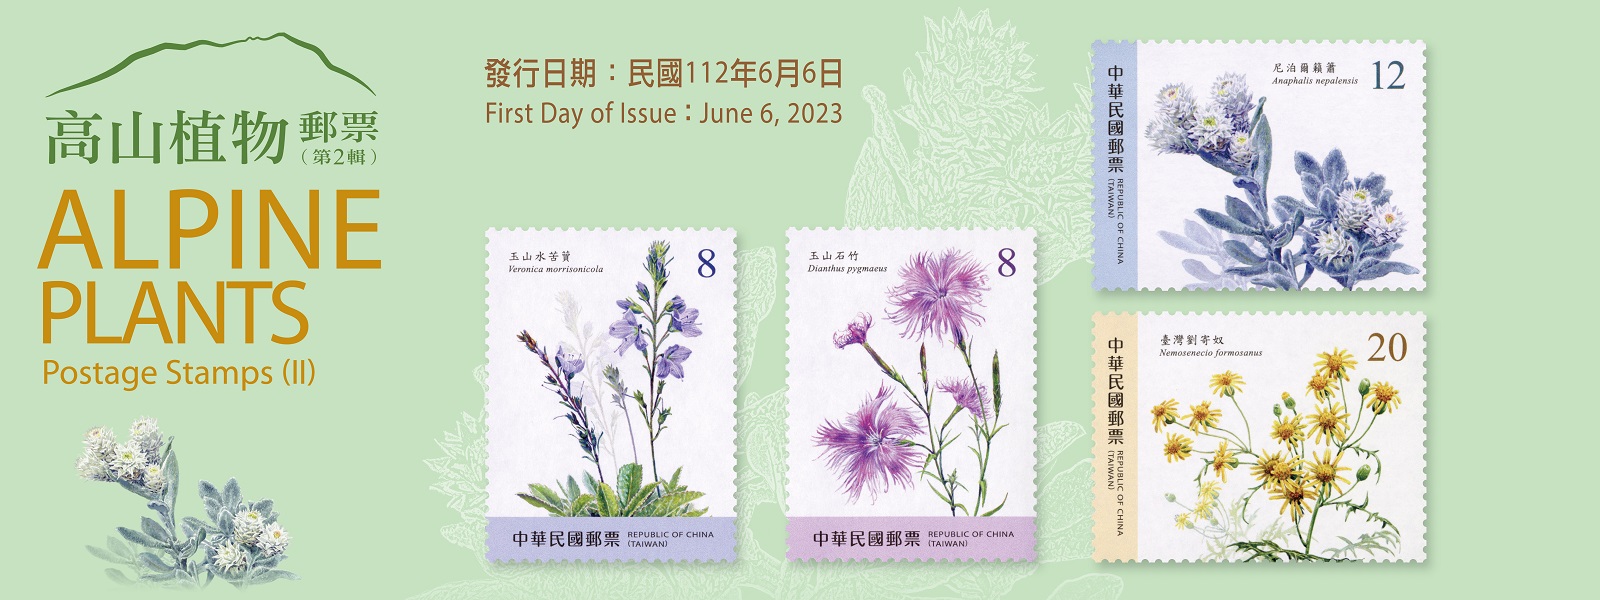 繼110年6月30日發行高山植物郵票（第1輯）後，本公司續發行第2輯郵票1套4枚。